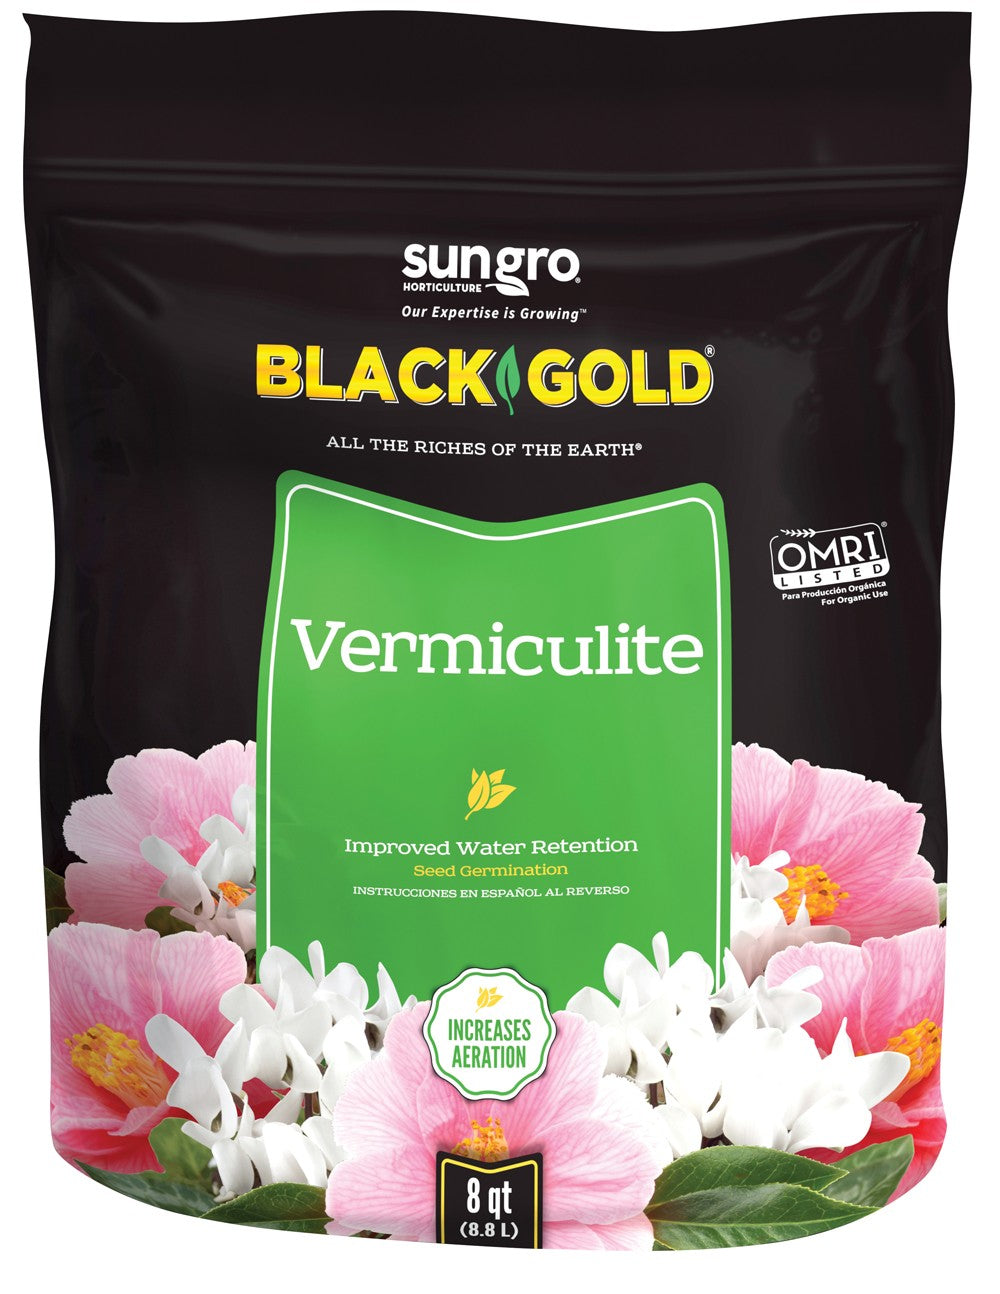 Black Gold Vermiculite 8qt